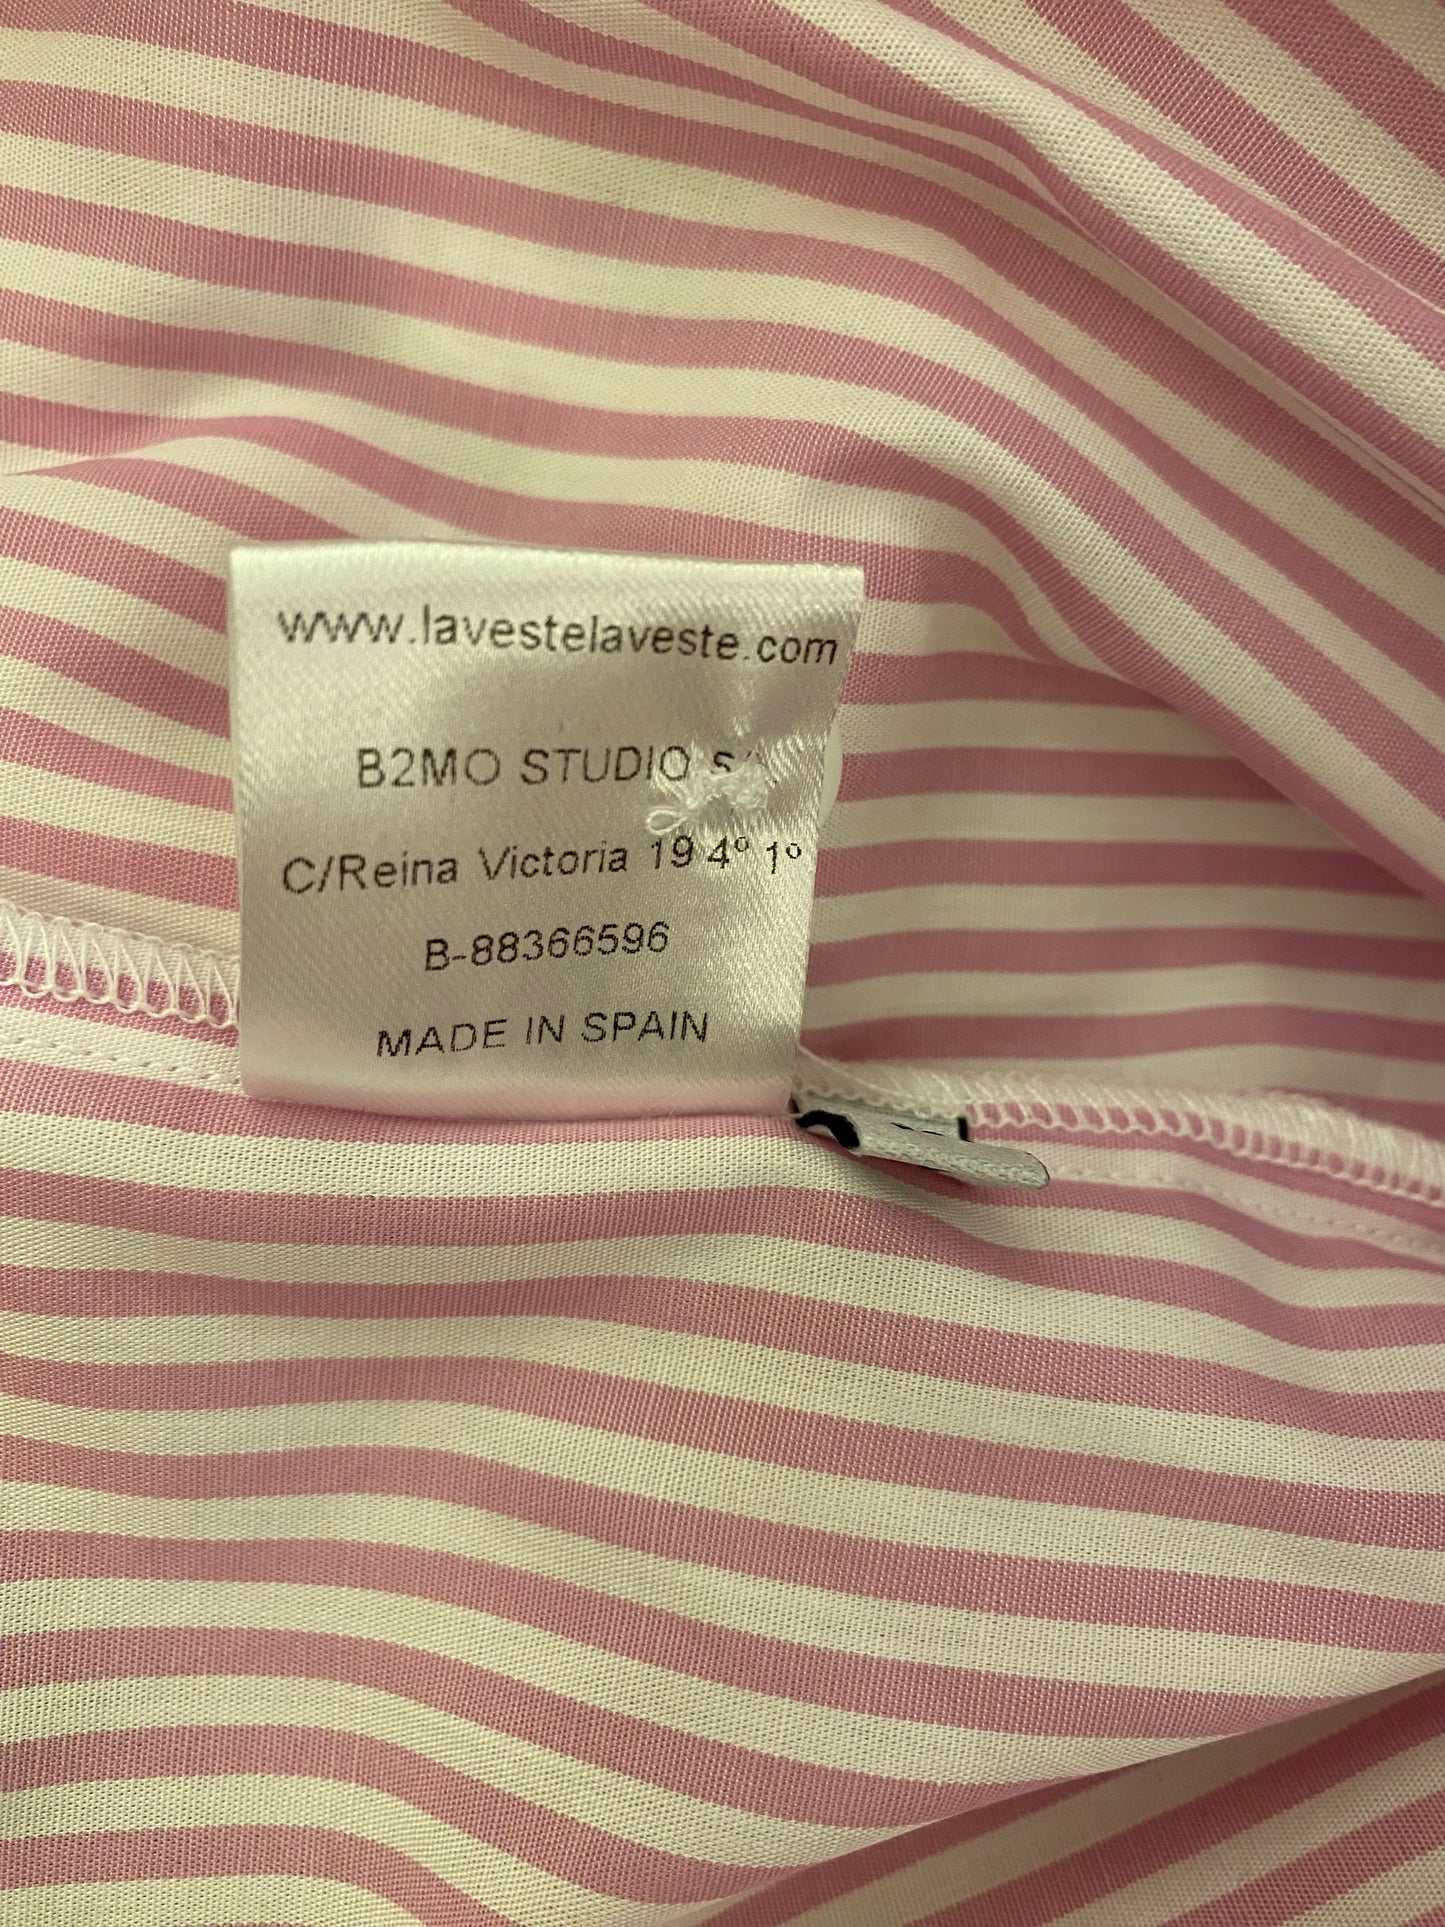 LA VESTE Cotton Pink Shirt Size M